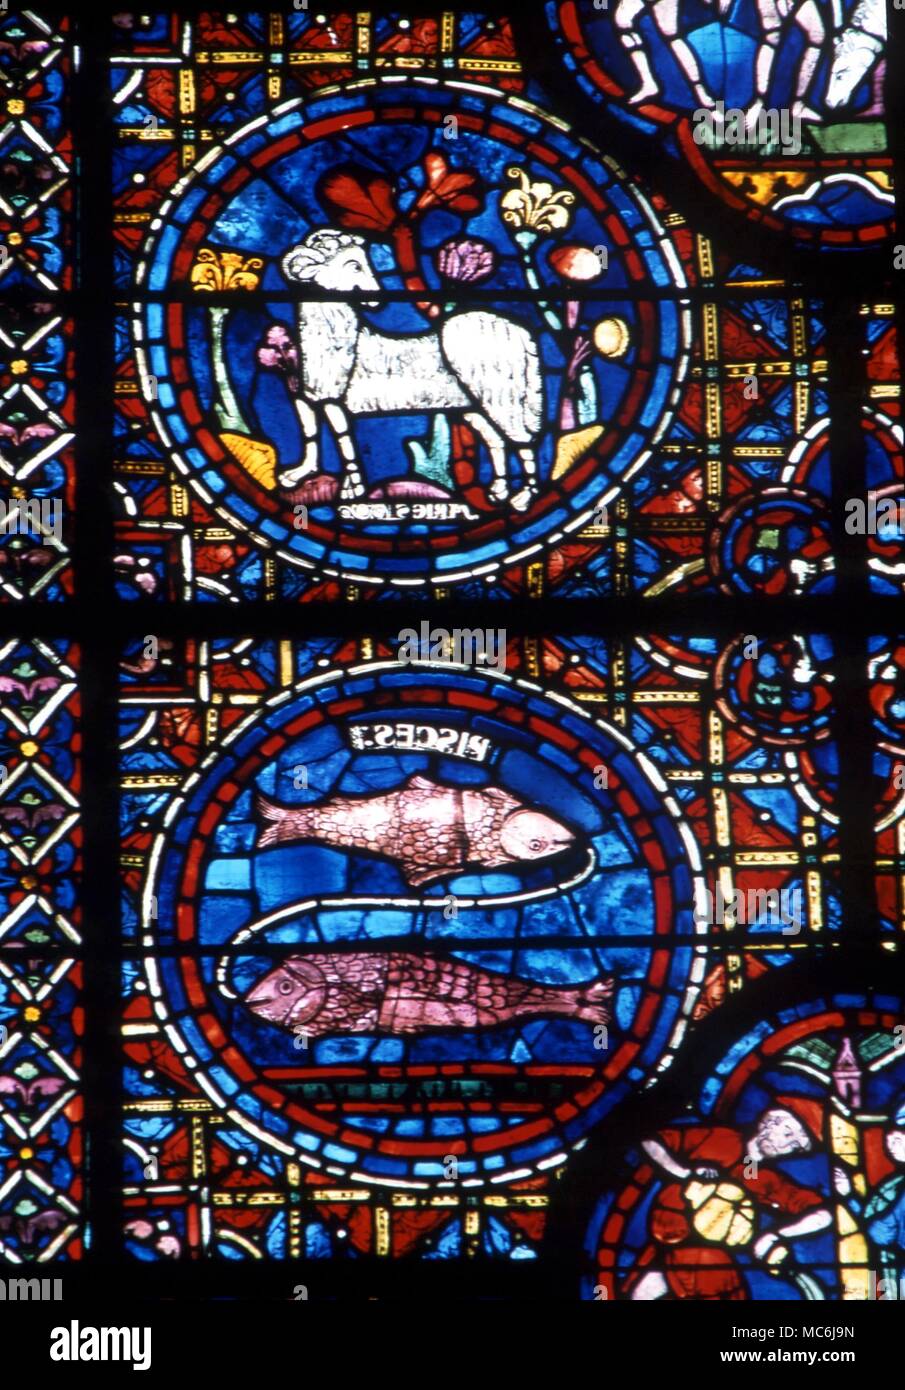 Astrologie. Tierkreiszeichen Widder und Fische aus dem Tierkreiszeichen Fenster der Kathedrale von Chartres, Frankreich Stockfoto